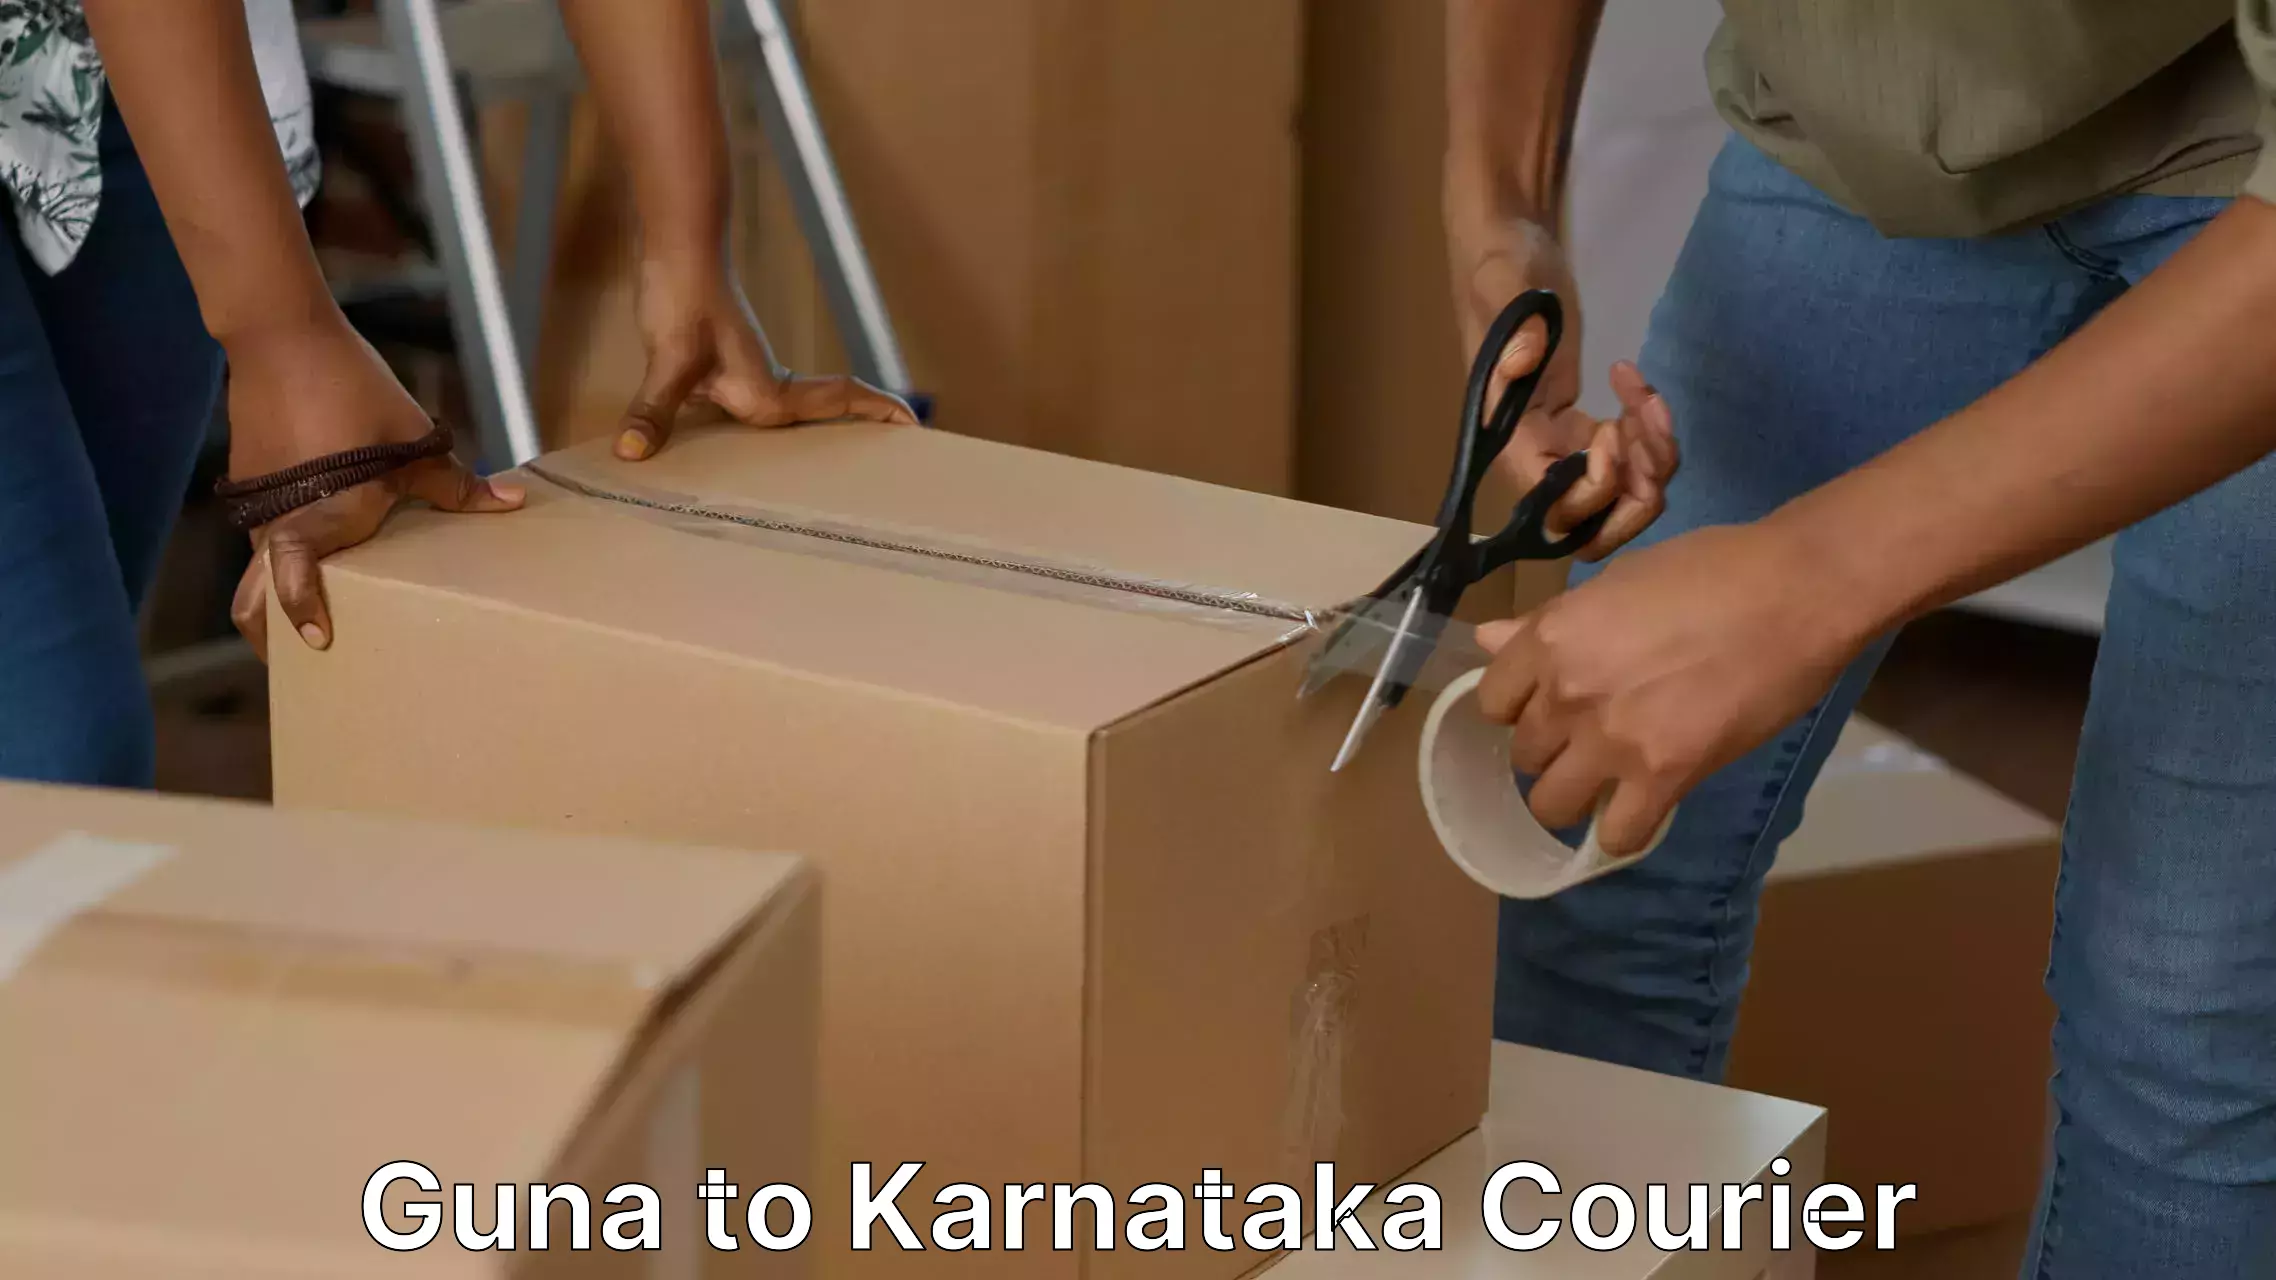 Efficient home goods movers Guna to Karnataka